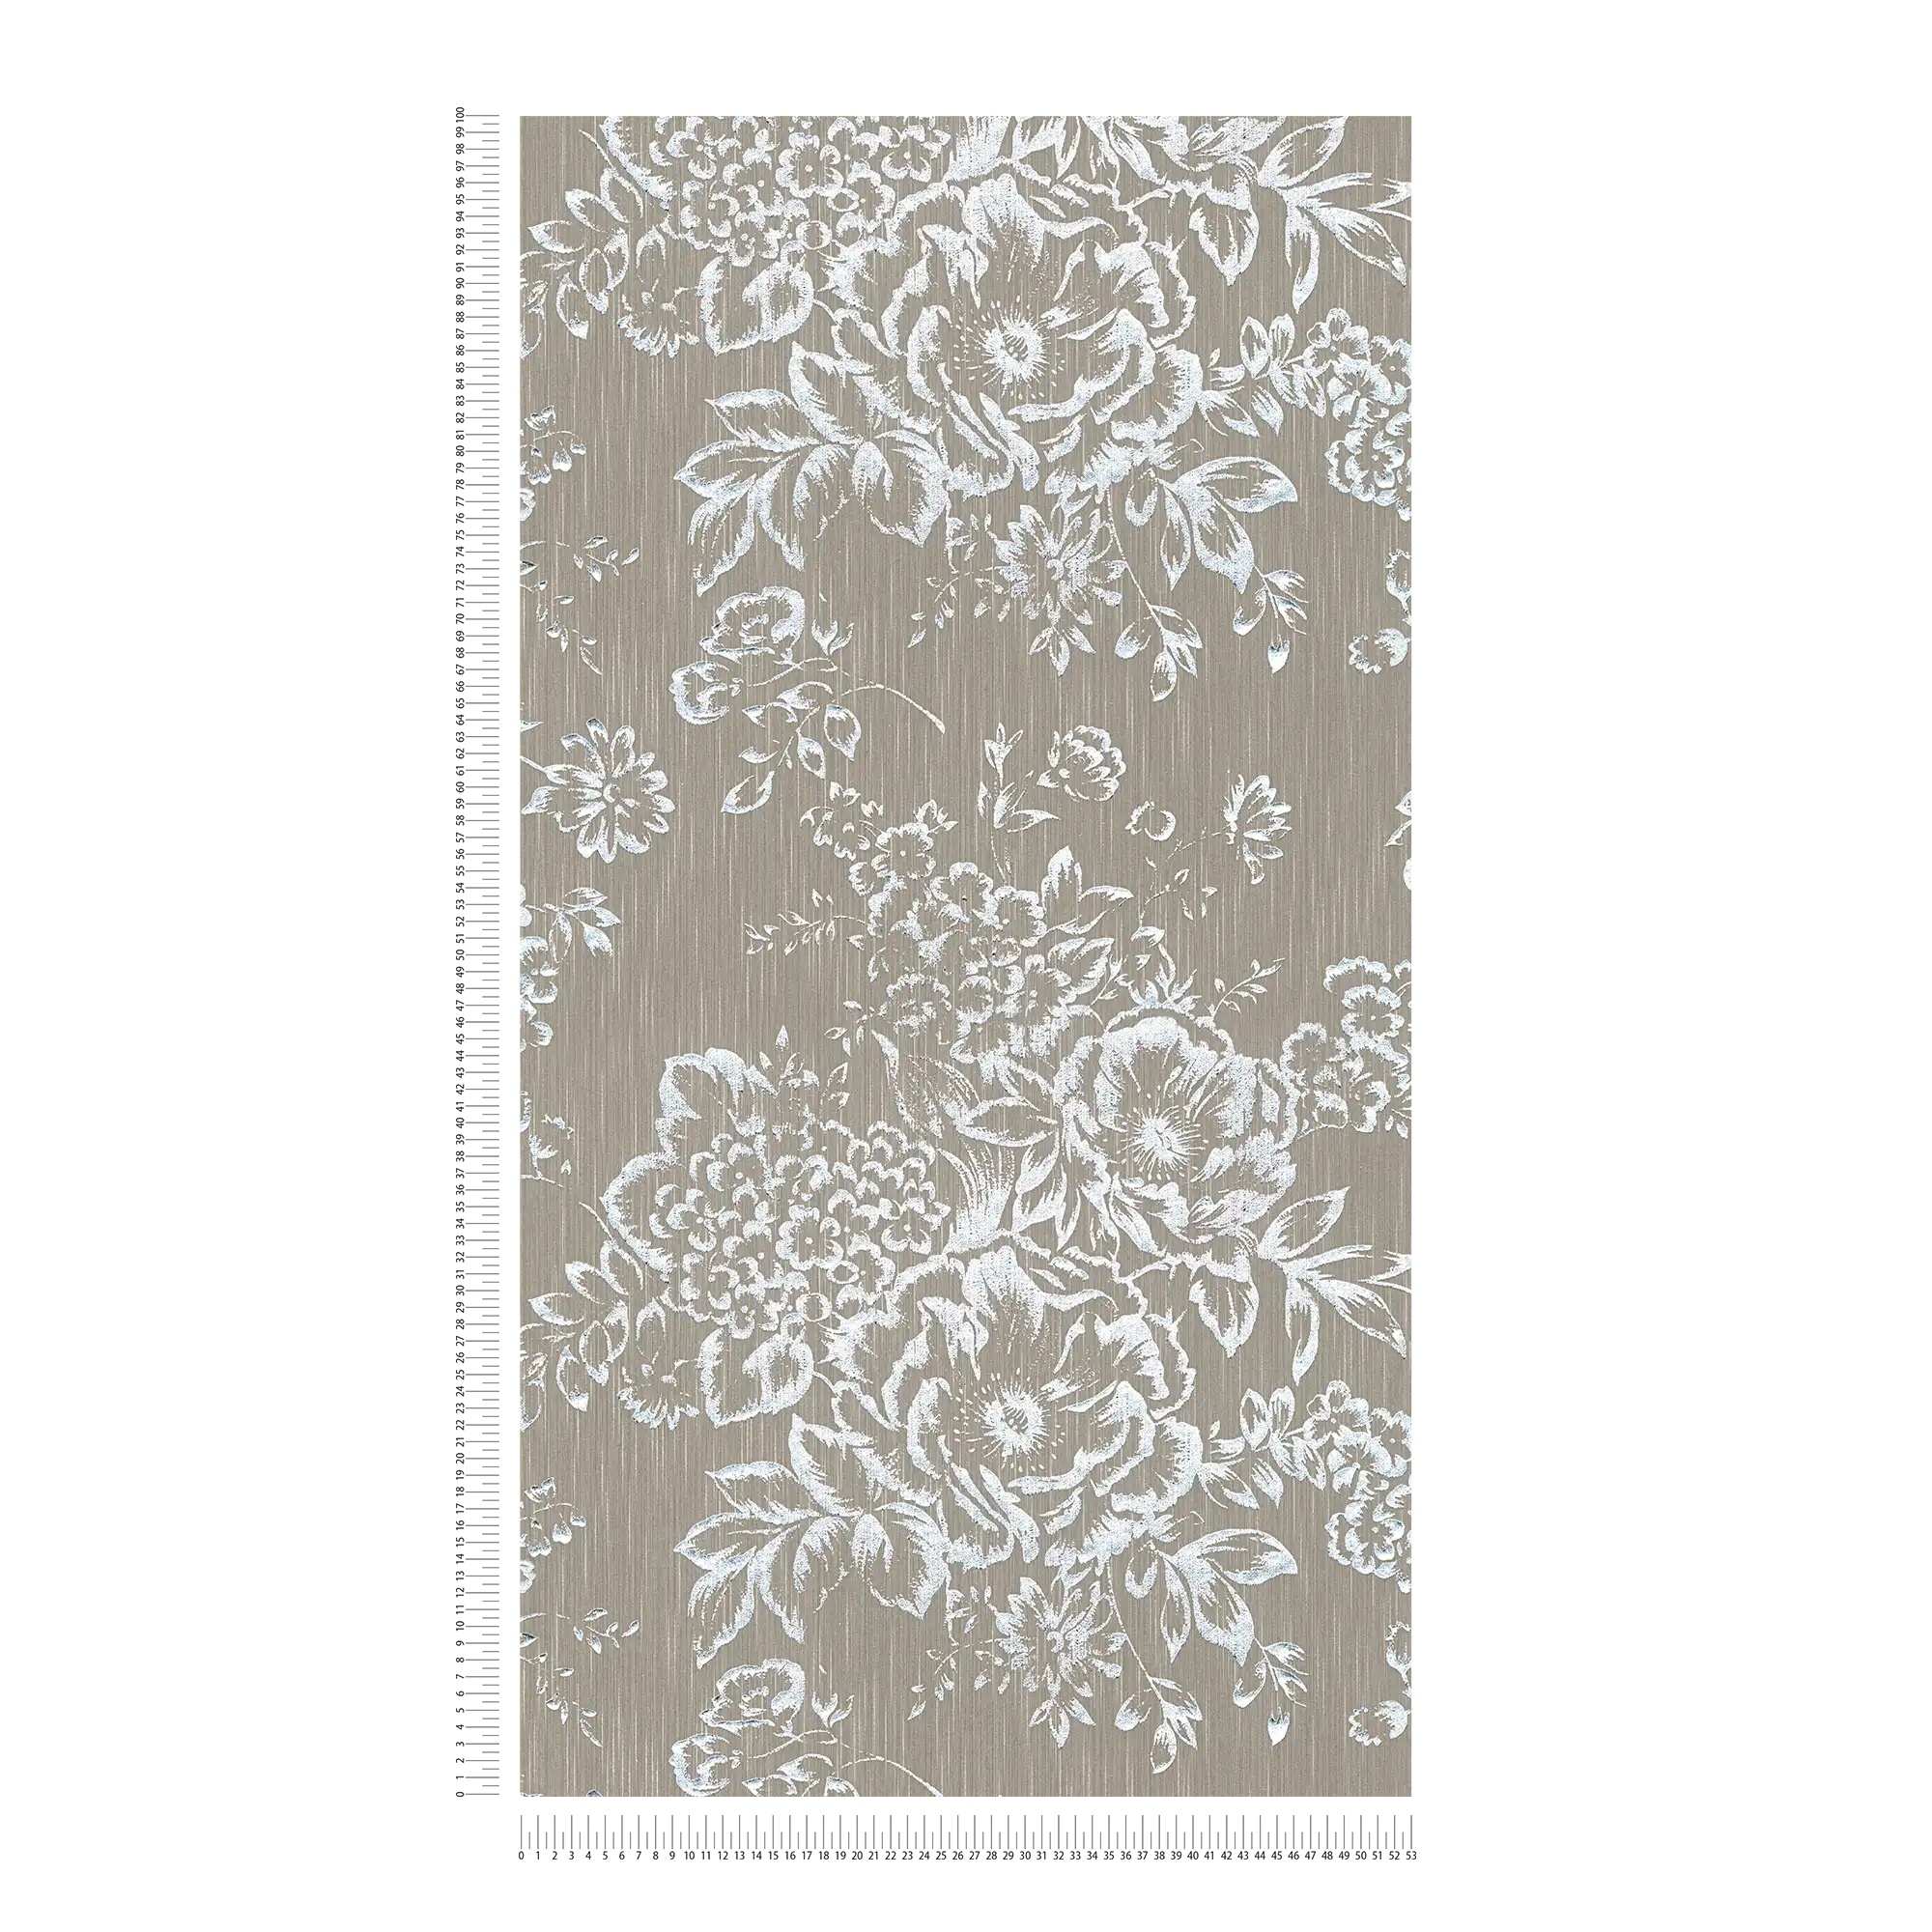             Textuurbehang met zilveren bloemenpatroon - zilver, bruin
        